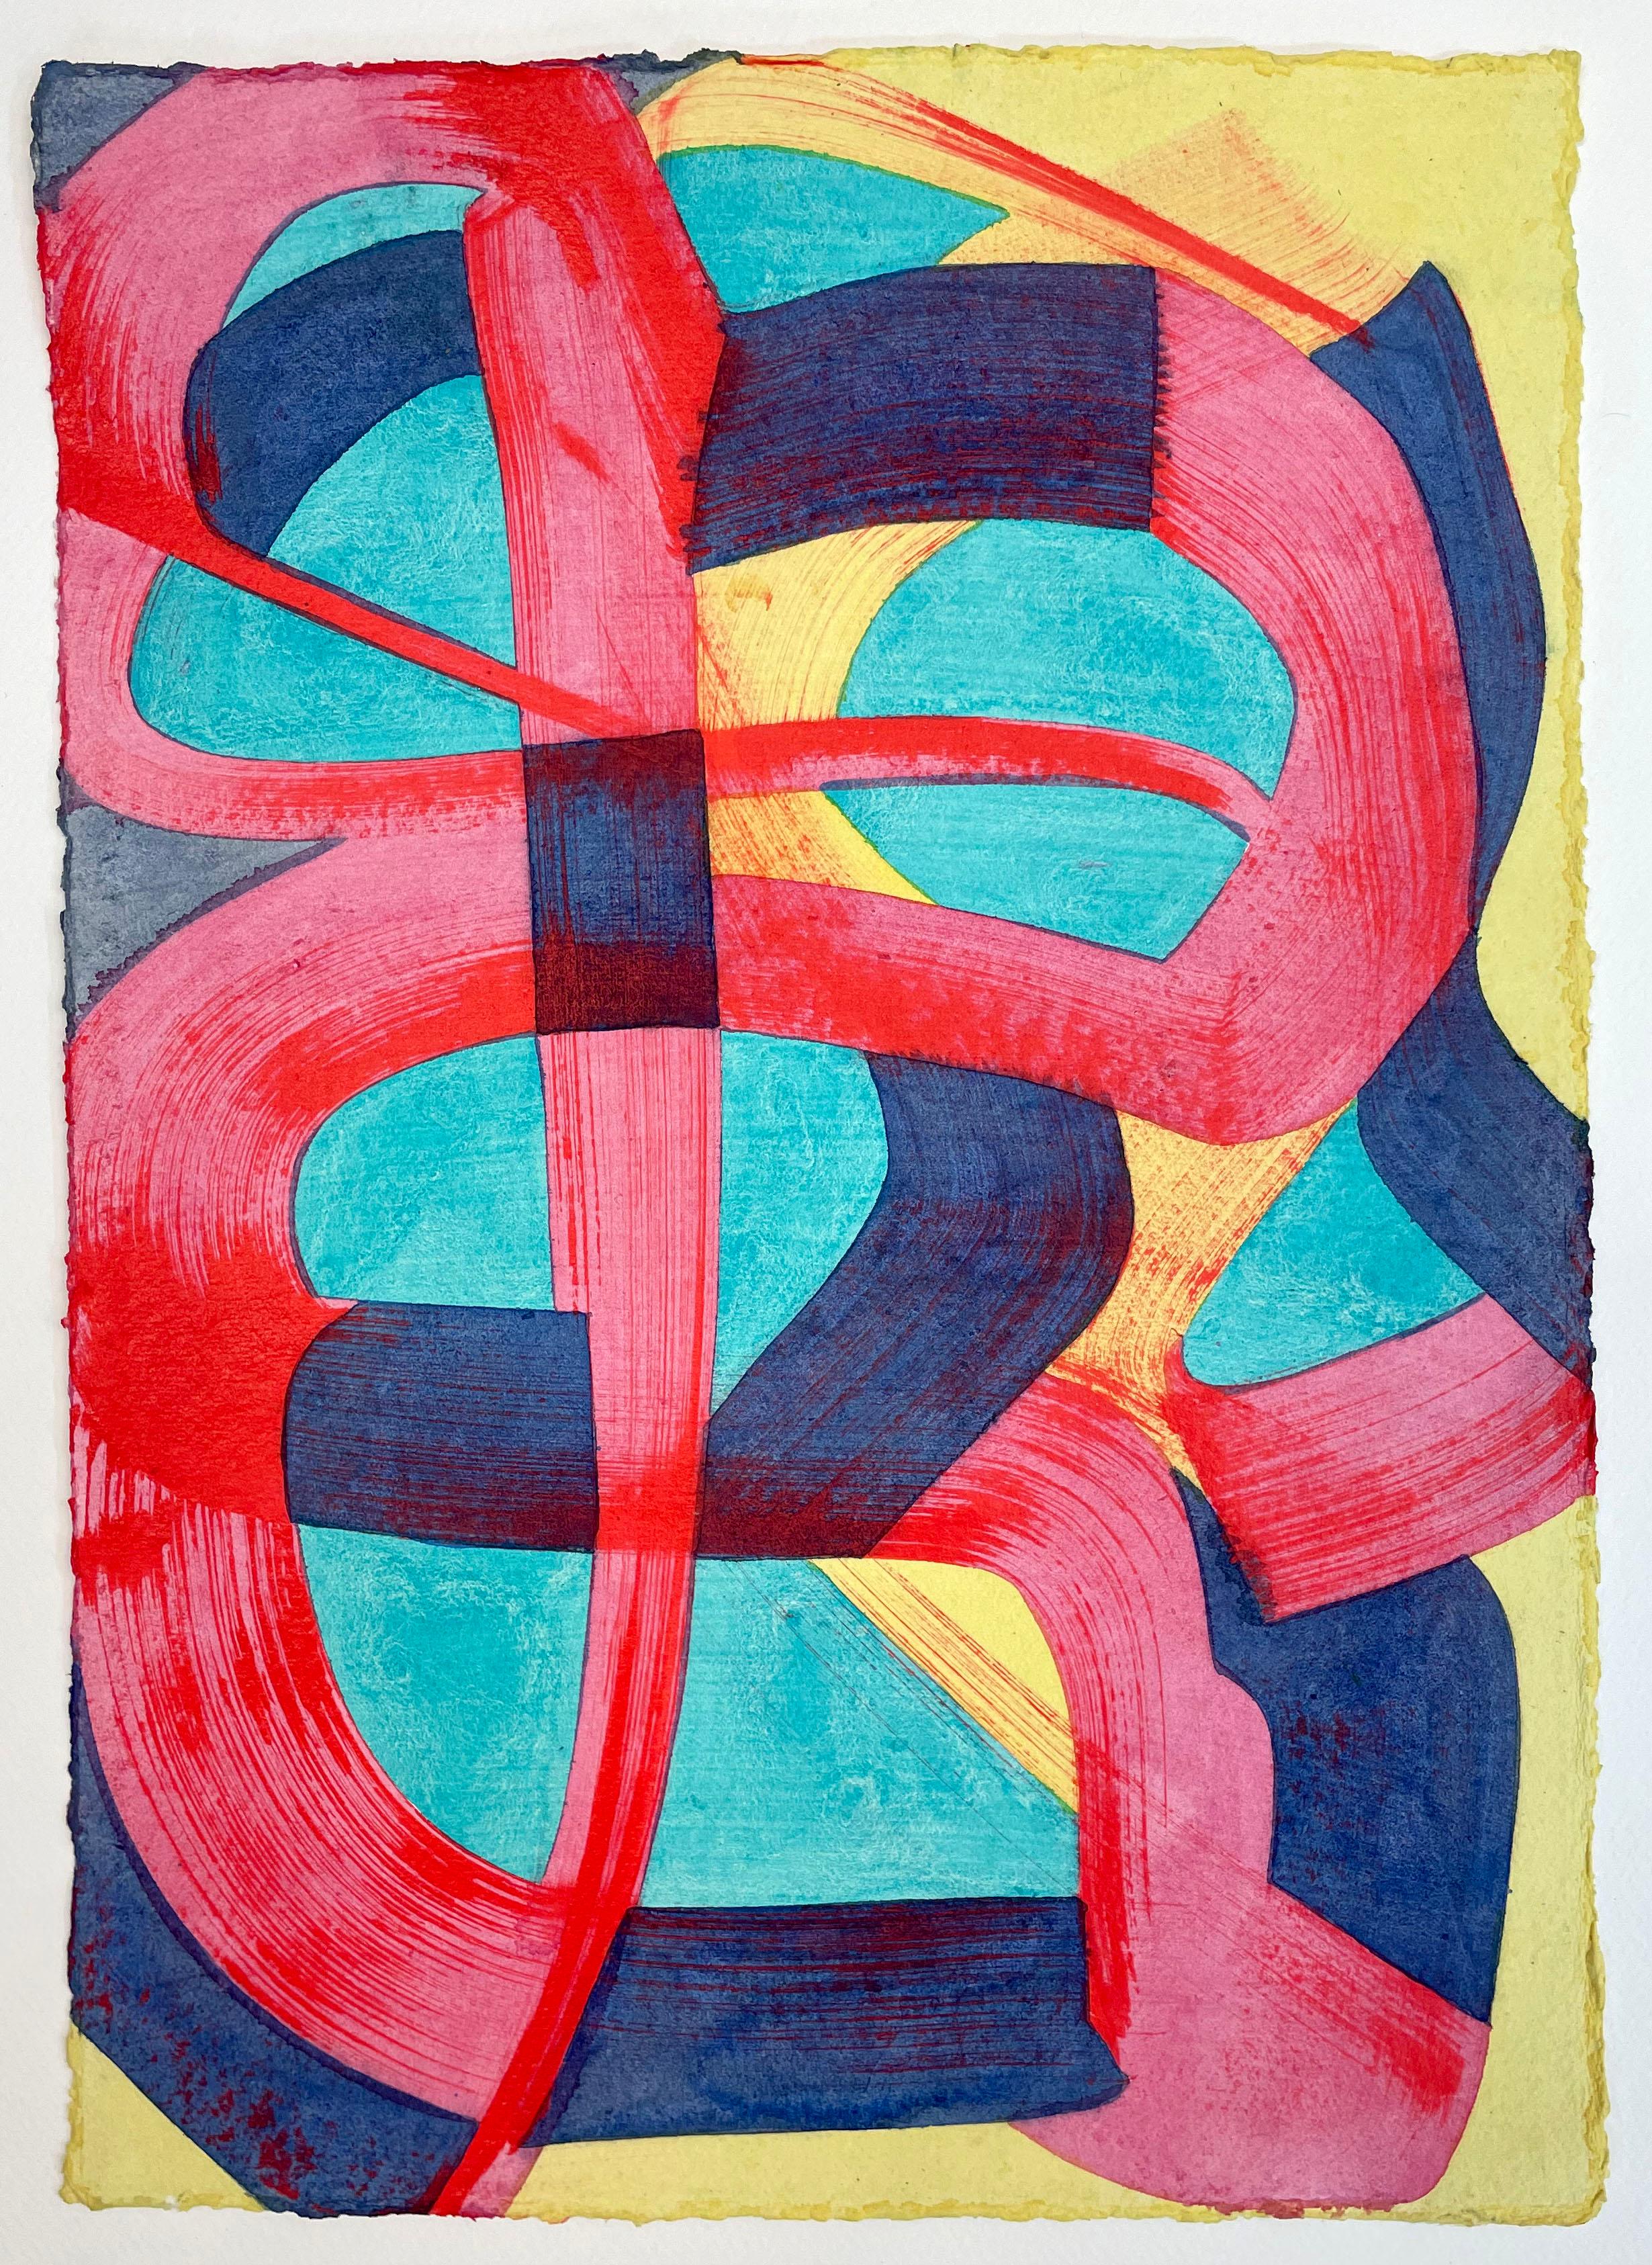 Abstract Painting Sarah Brenneman - C'est ce que nous connaissons, abstrait, coloré, aquarelle et acrylique sur papier